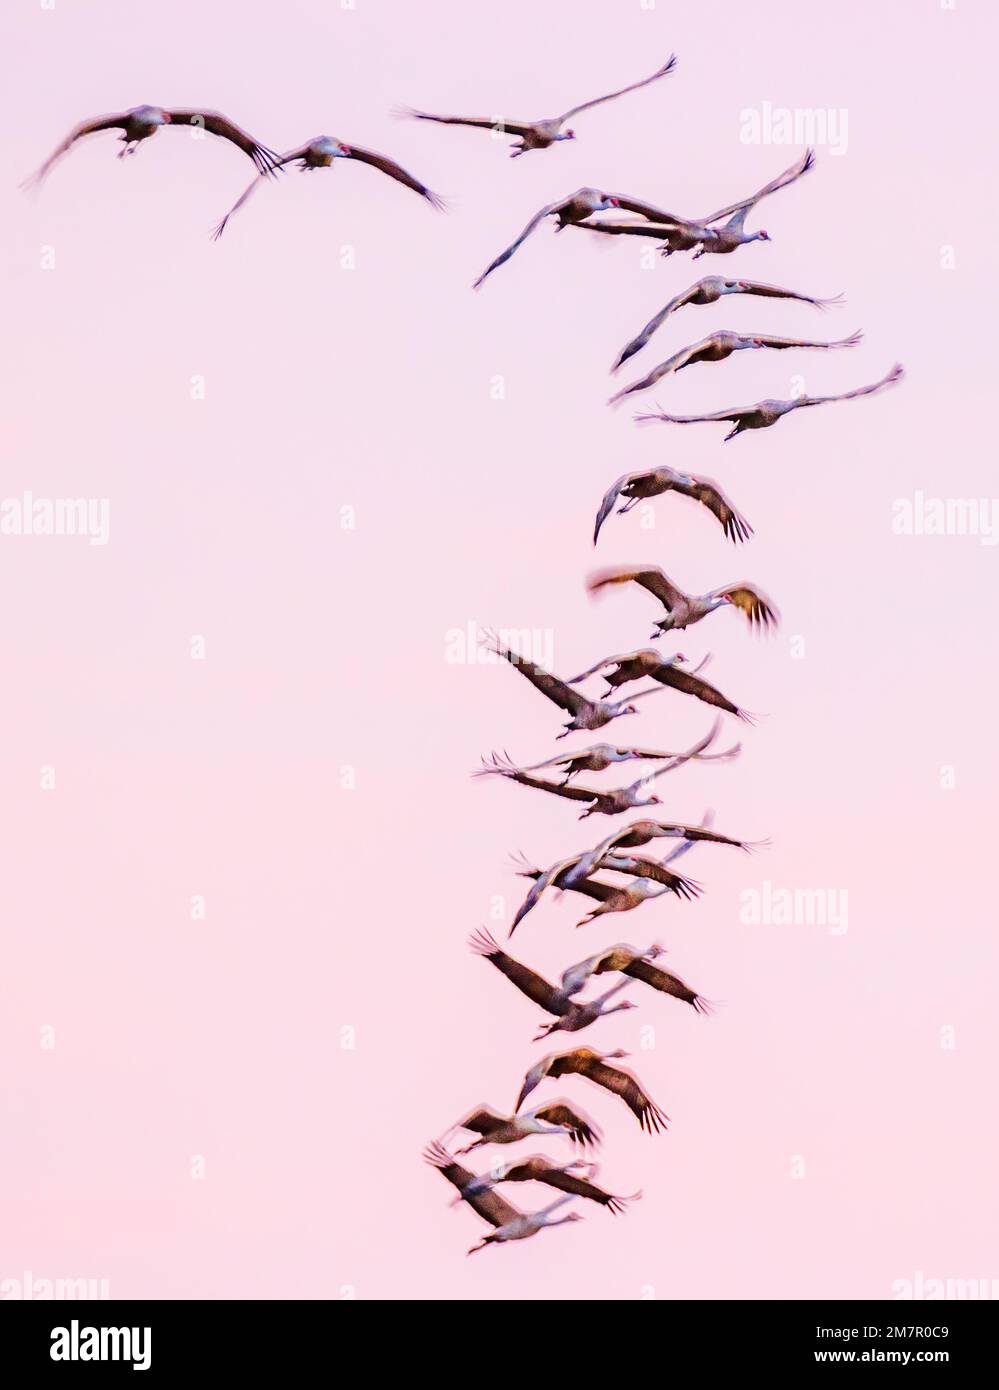 Pan; desenfoque; vista de movimiento de Sandhill Cranes en vuelo al amanecer; Refugio Nacional de Vida Silvestre Monte Vista; Valle de San Luis; Colorado; Estados Unidos Foto de stock